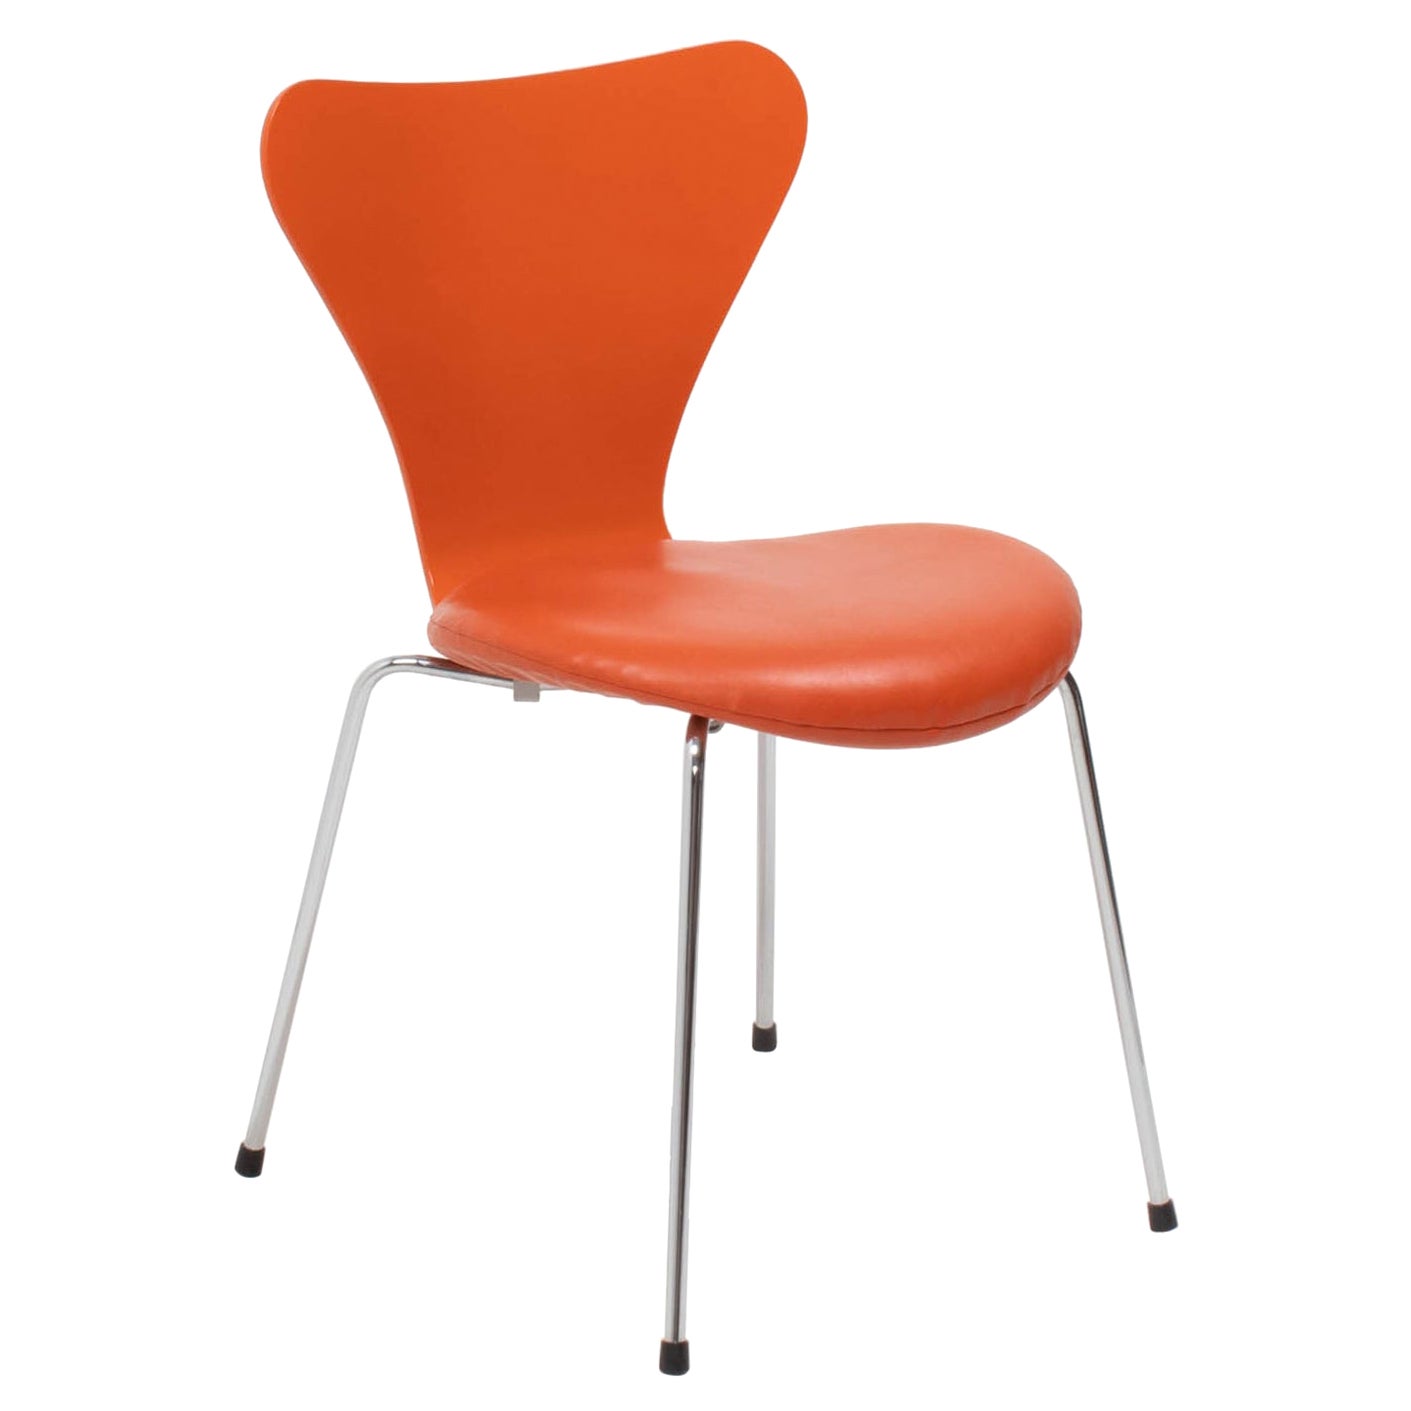 Arne Jacobsen for Fritz Hansen Orange Leather Series 7 Dining Chair